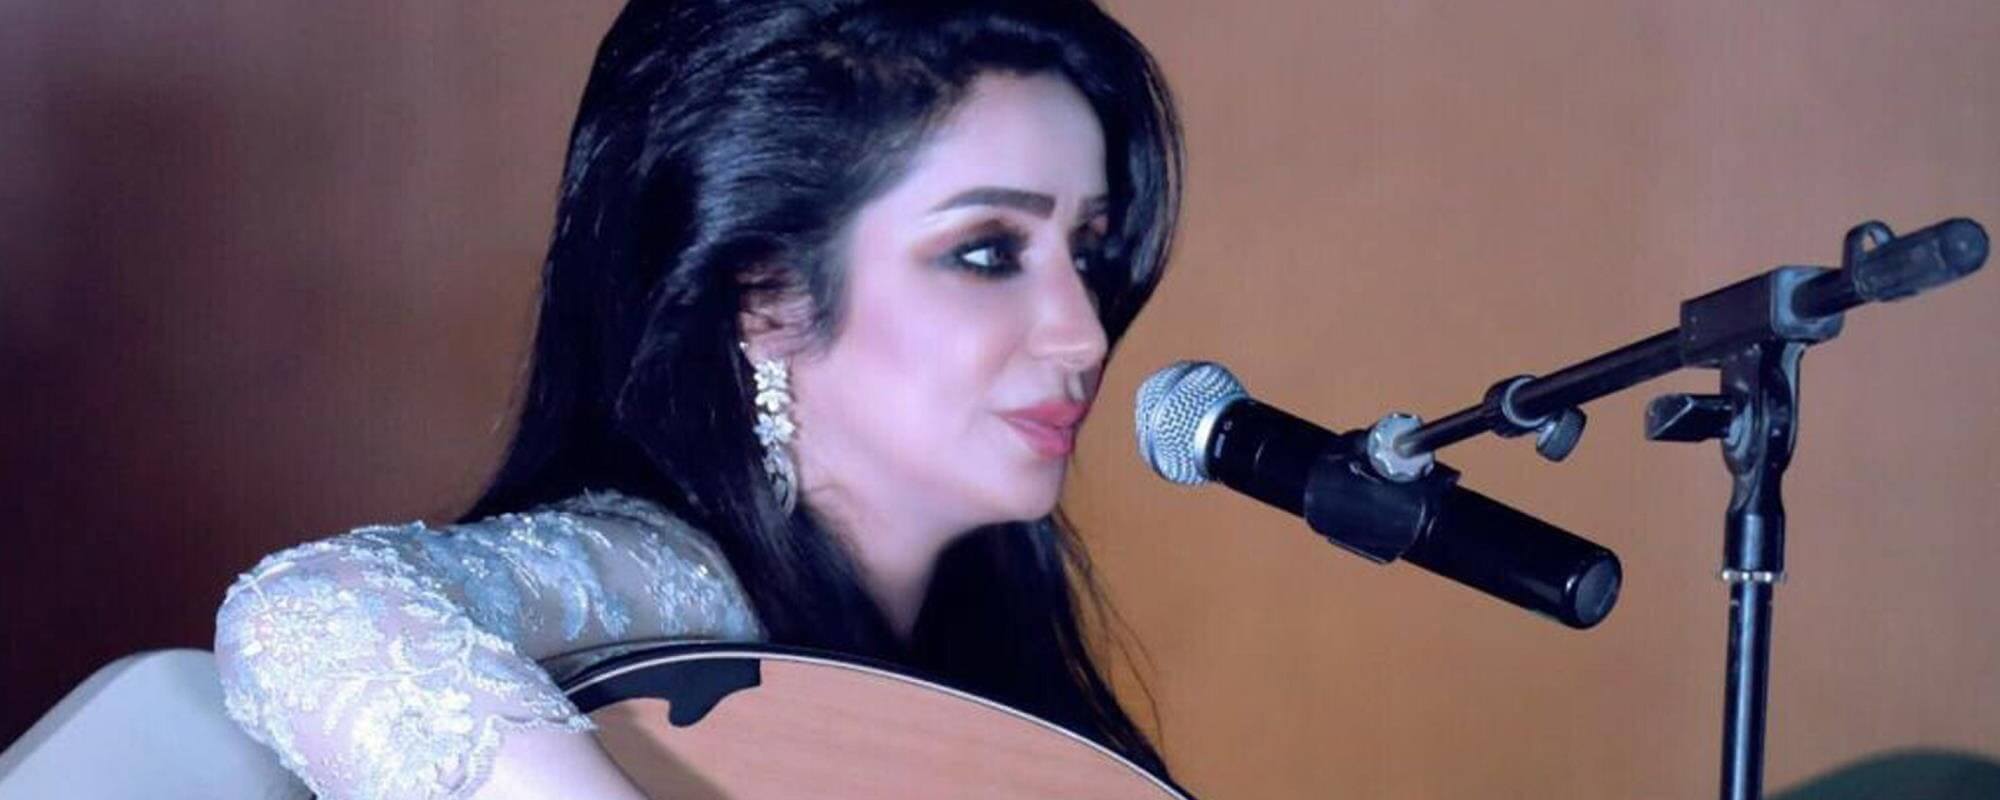 cantante Fátima Zahrat AlAin en expo dubai